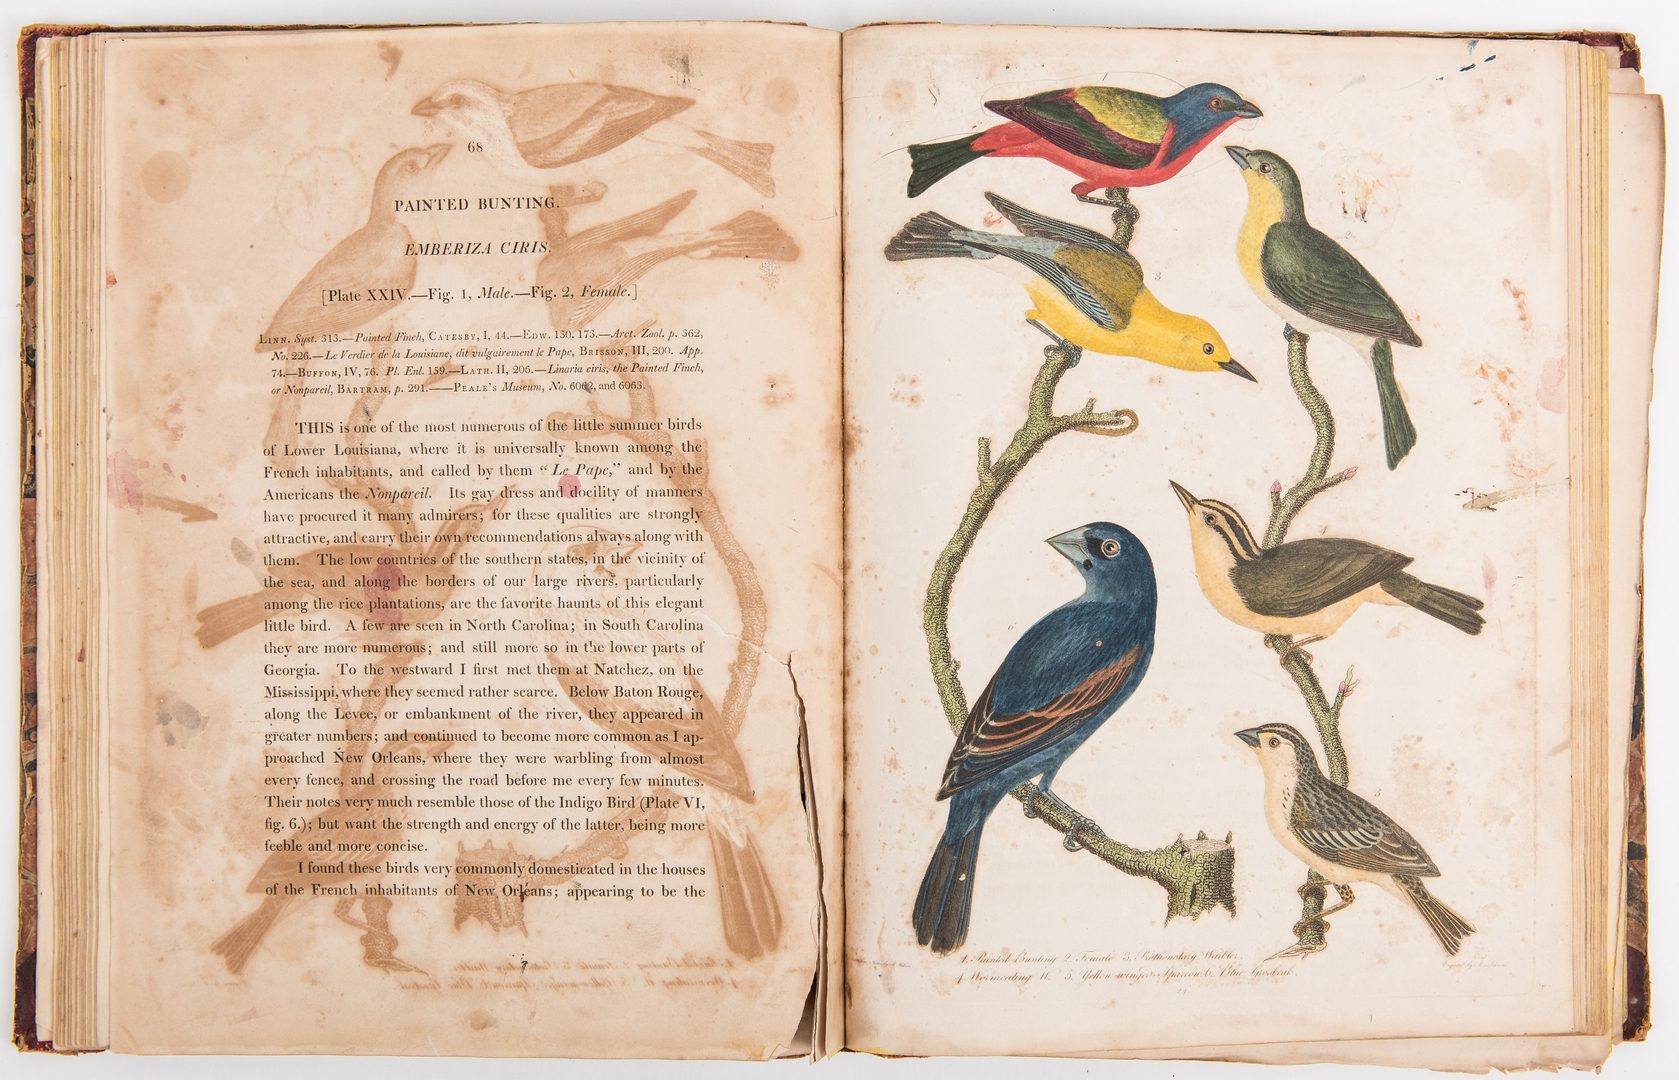 Lot 805: Wilson, American Ornithology, Vol. II & V, 1812